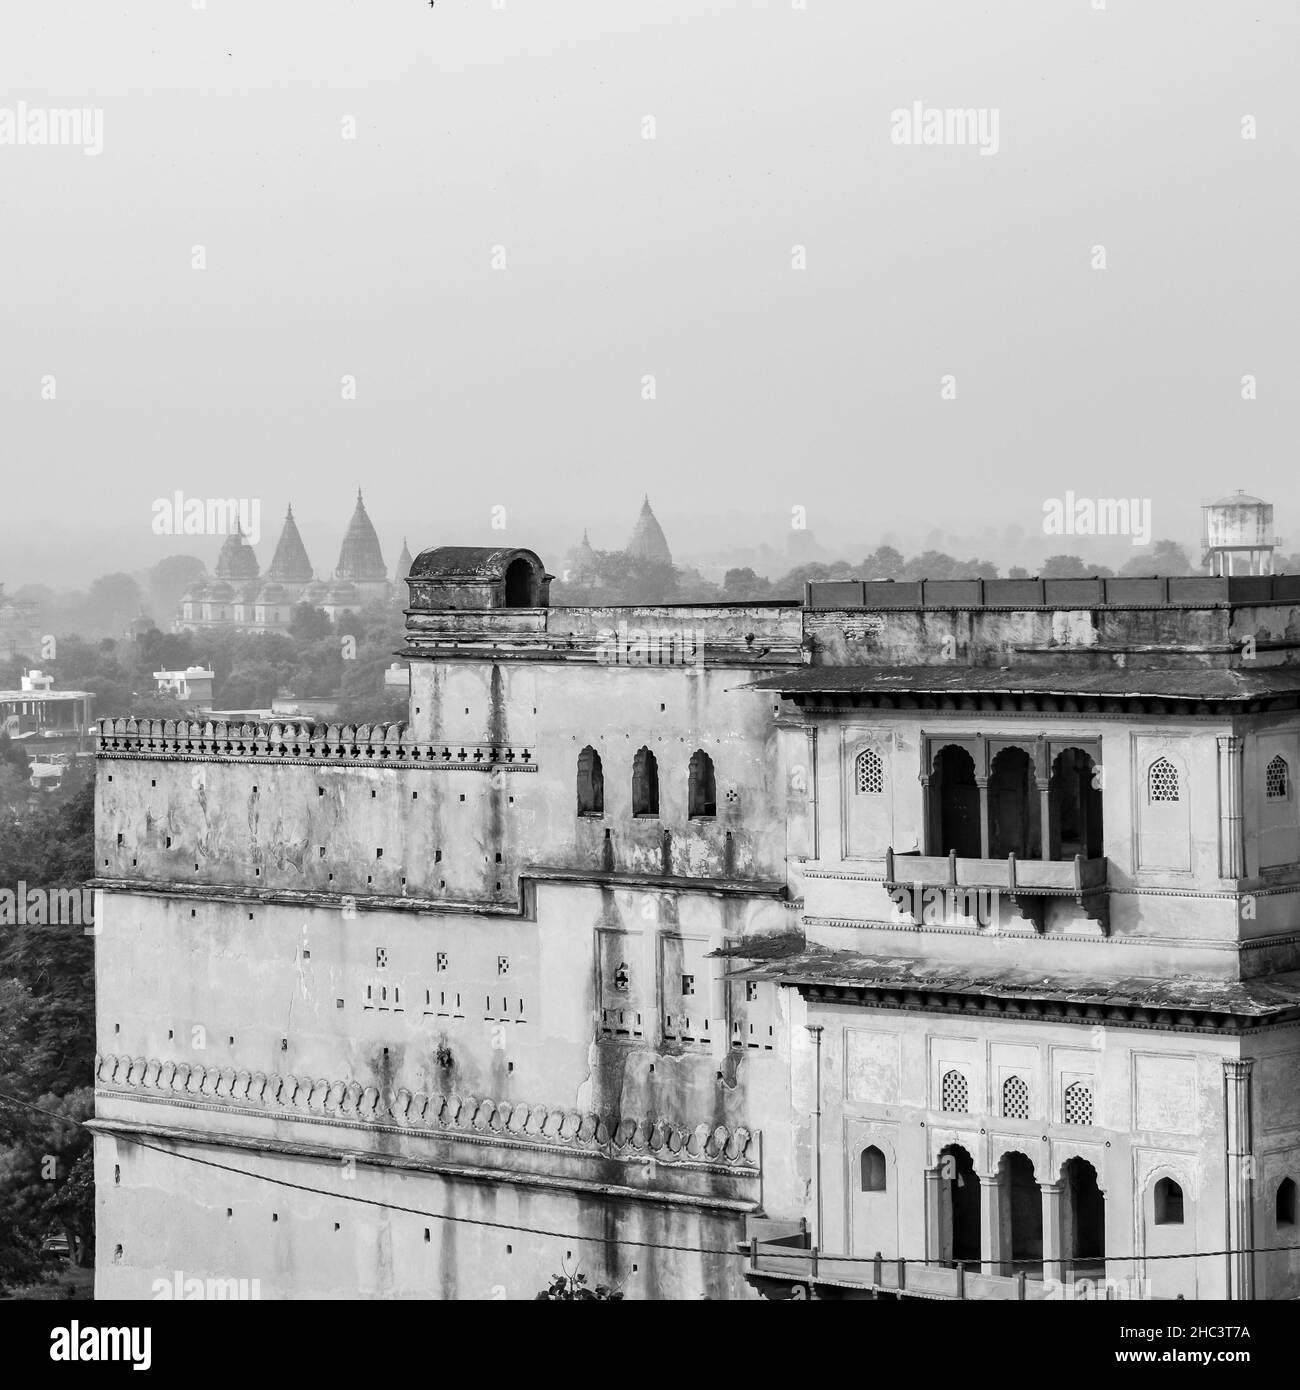 Jahangir Mahal (Orchha Fort) in Orchha, Madhya Pradesh, India, Jahangir Mahal or Orchha Palace is citadel and garrison located in Orchha. Madhya Prade Stock Photo